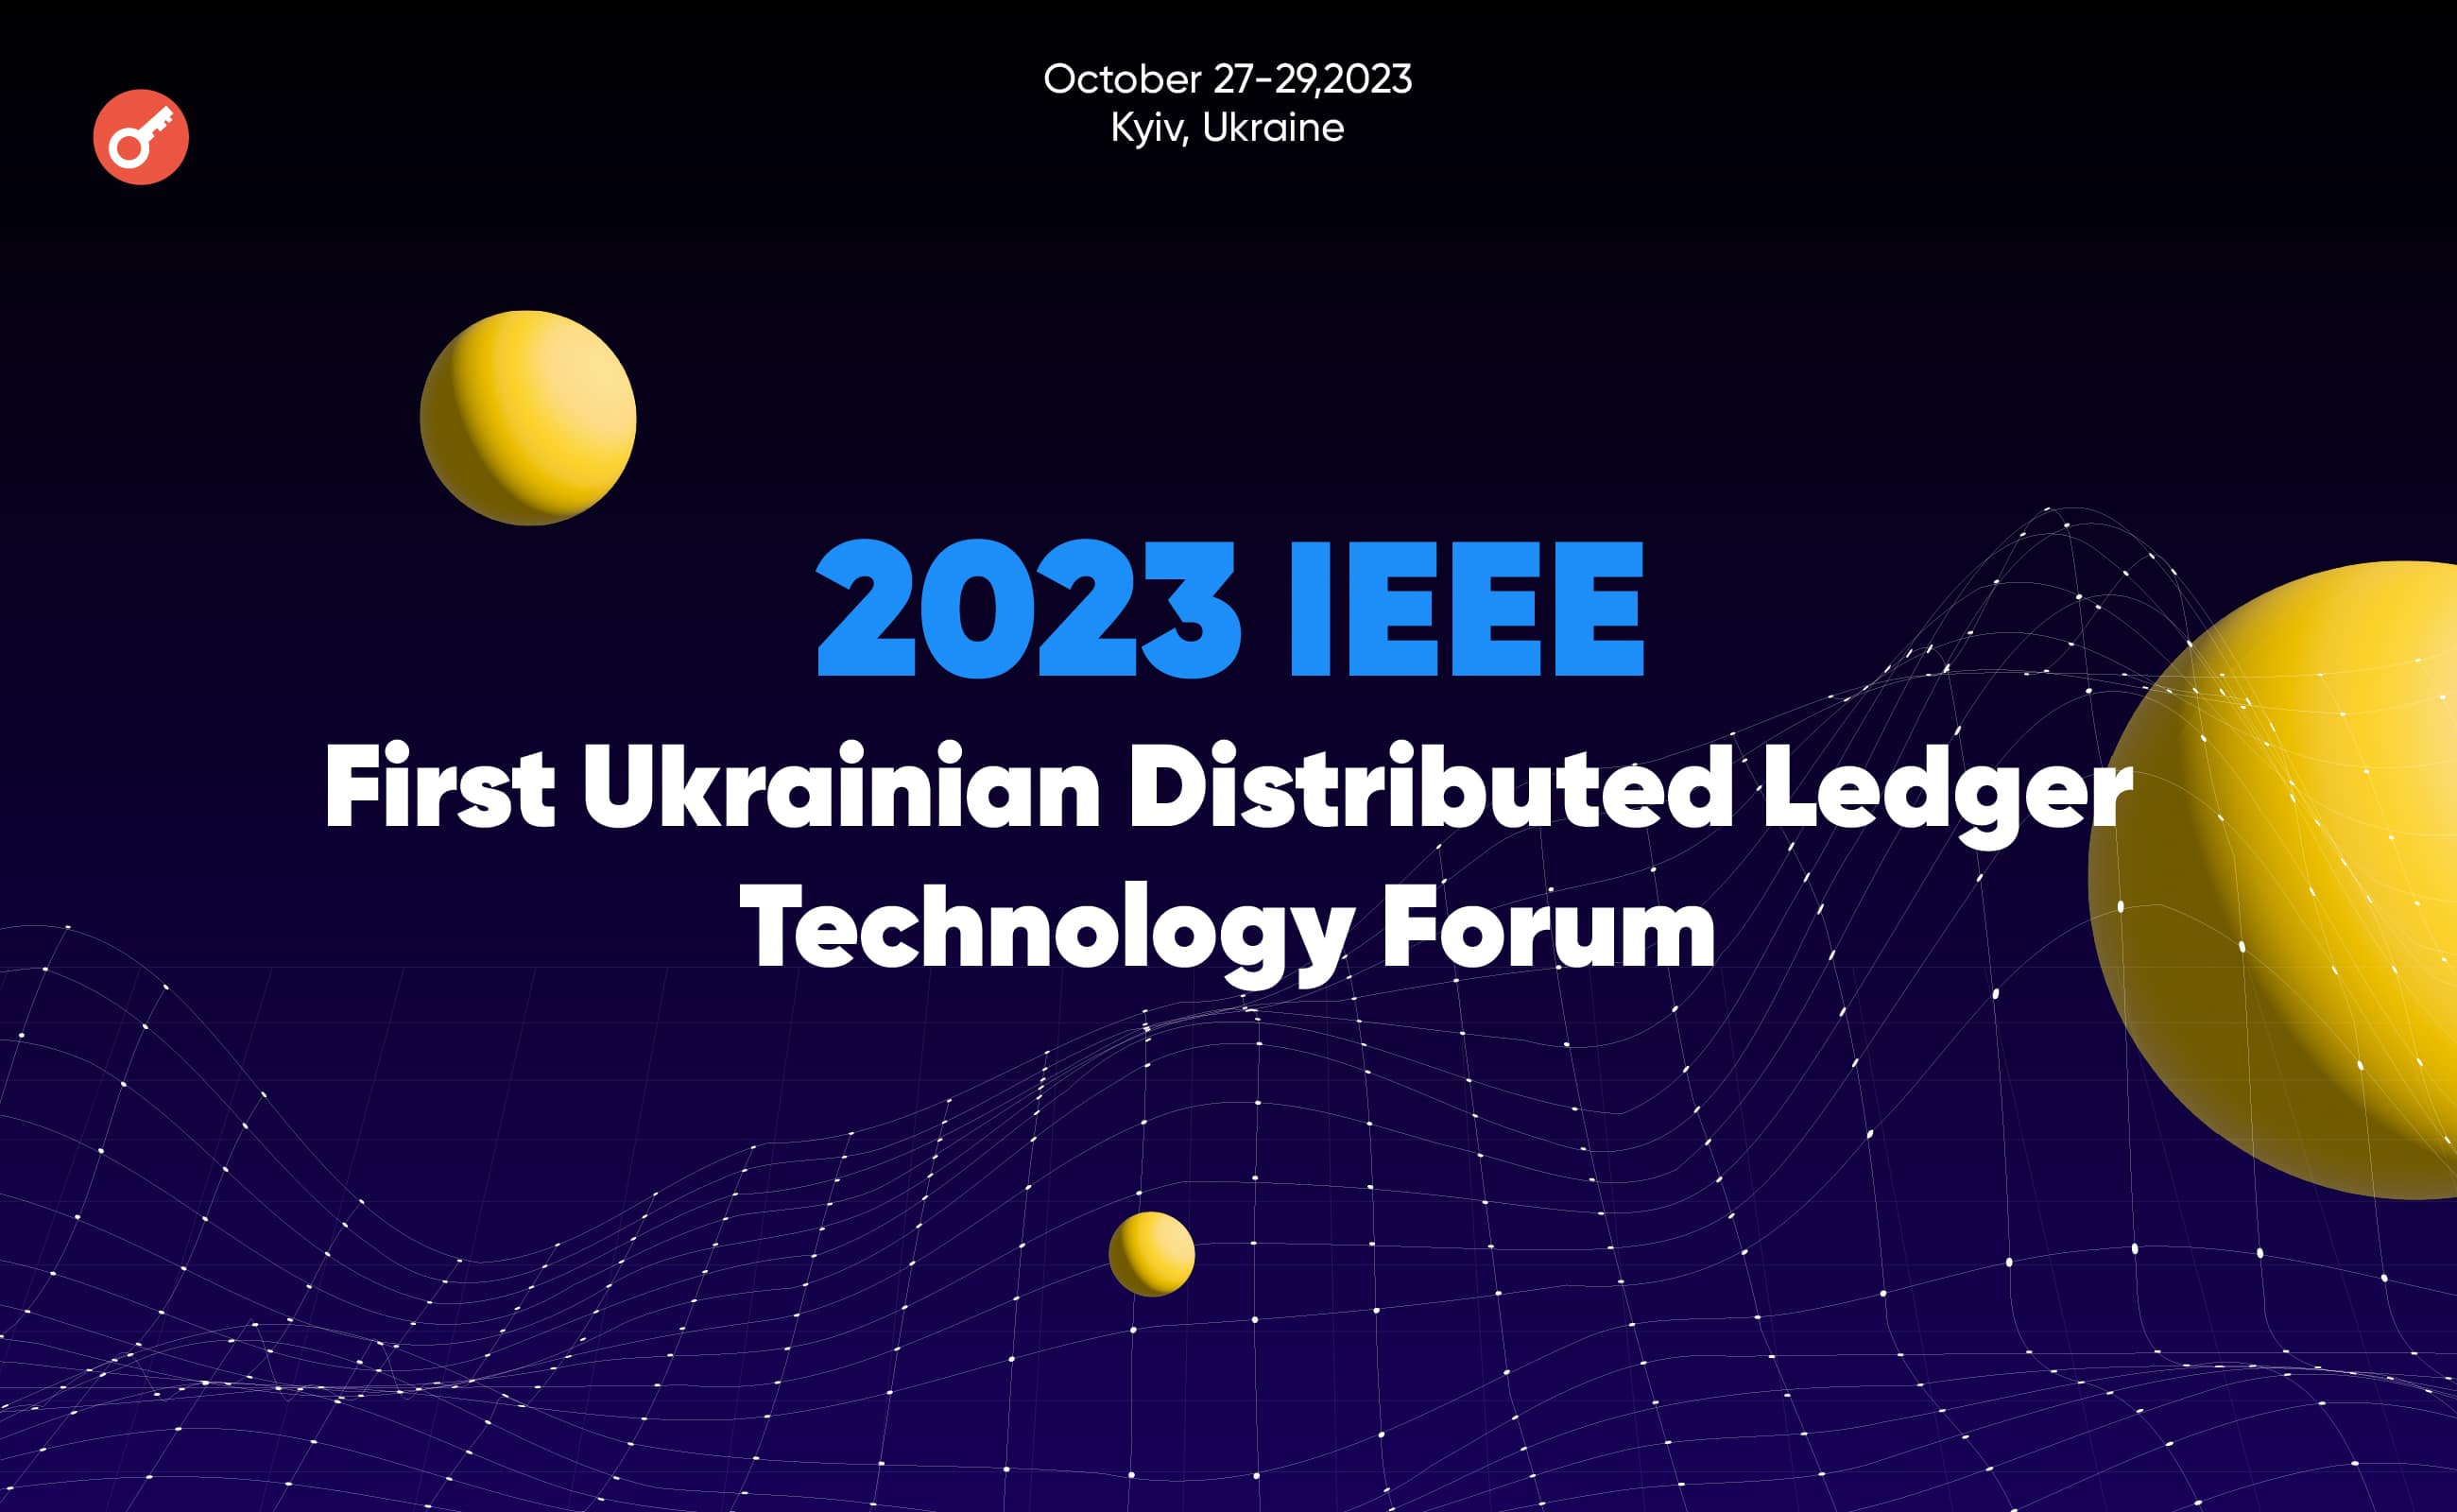 В Киеве состоится Первый украинский форум по технологиям распределенного реестра от IEEE. Заглавный коллаж новости.